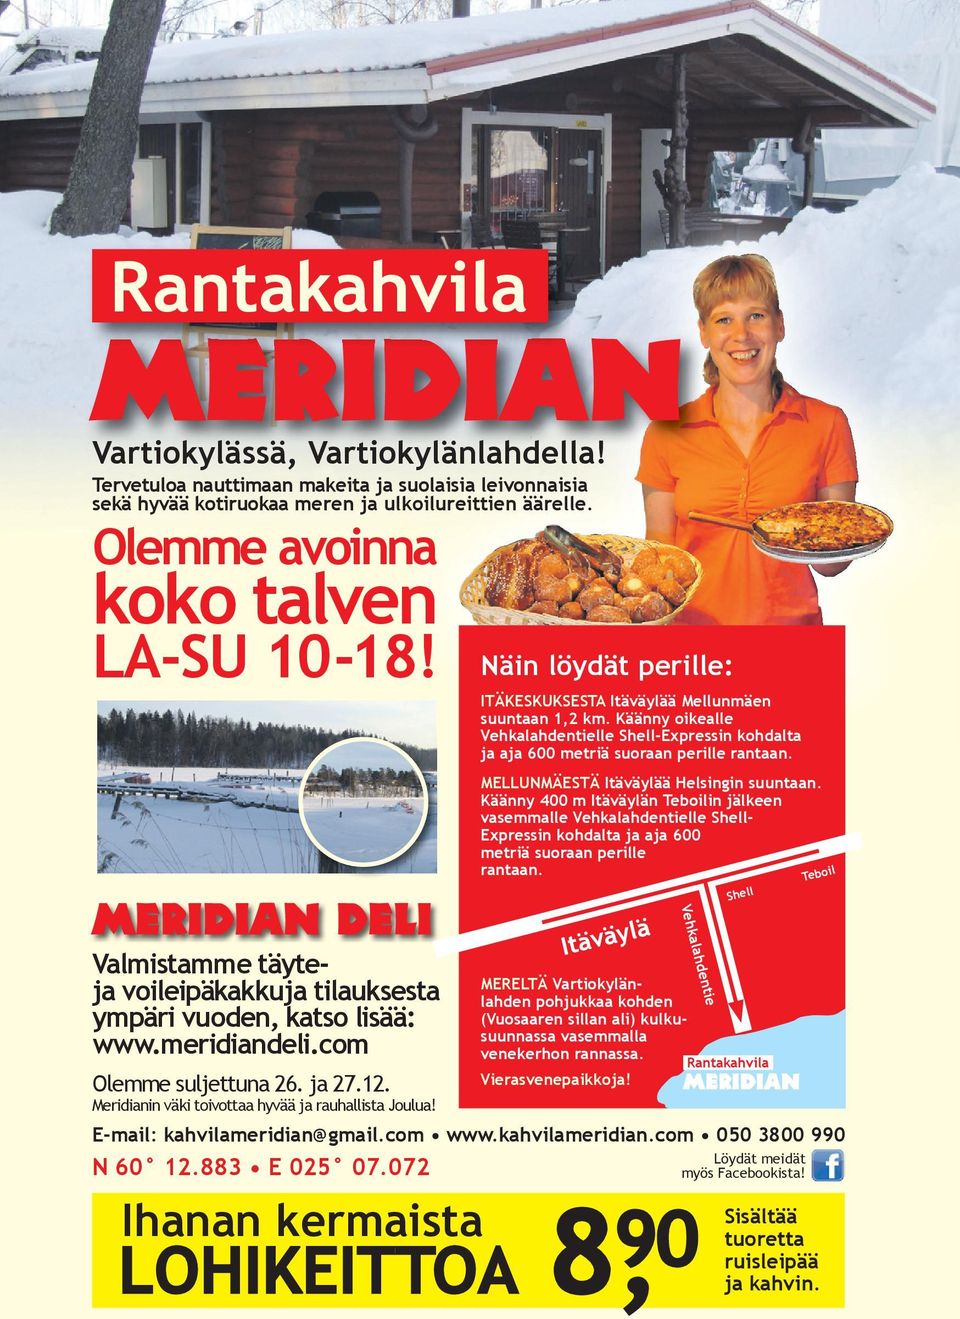 Meridianin väki toivottaa hyvää ja rauhallista Joulua! Näin löydät perille: ITÄKESKUKSESTA Itäväylää Mellunmäen suuntaan 1,2 km.